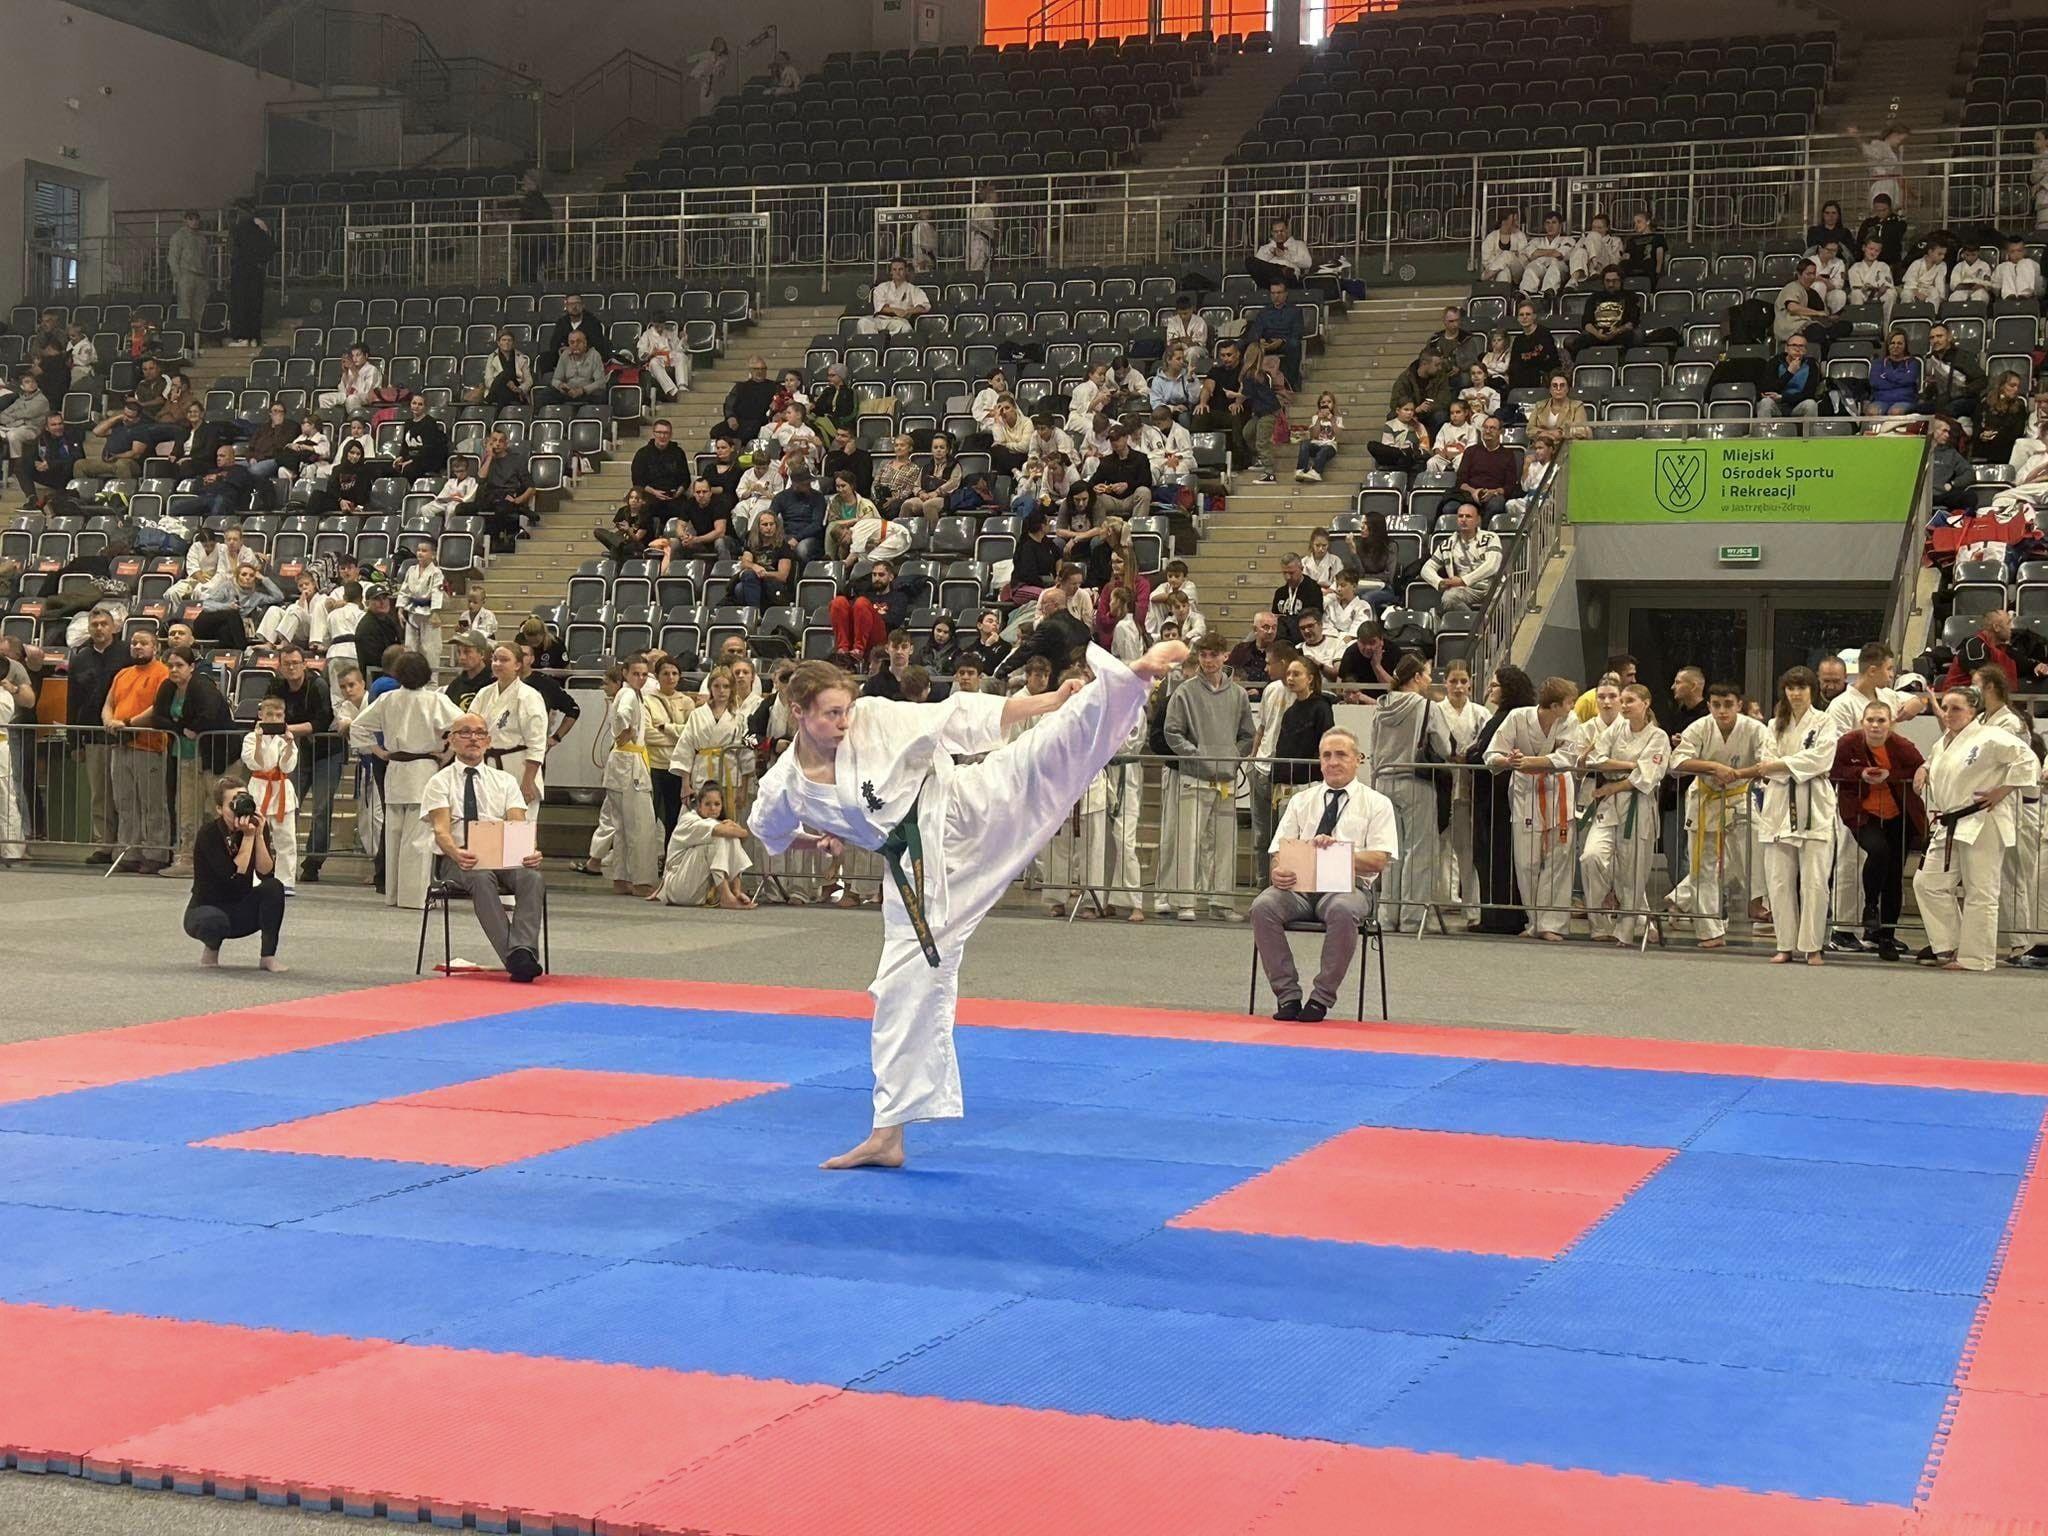 XV Międzynarodowy Turniej Karate Kyokushin Carbon Cup 